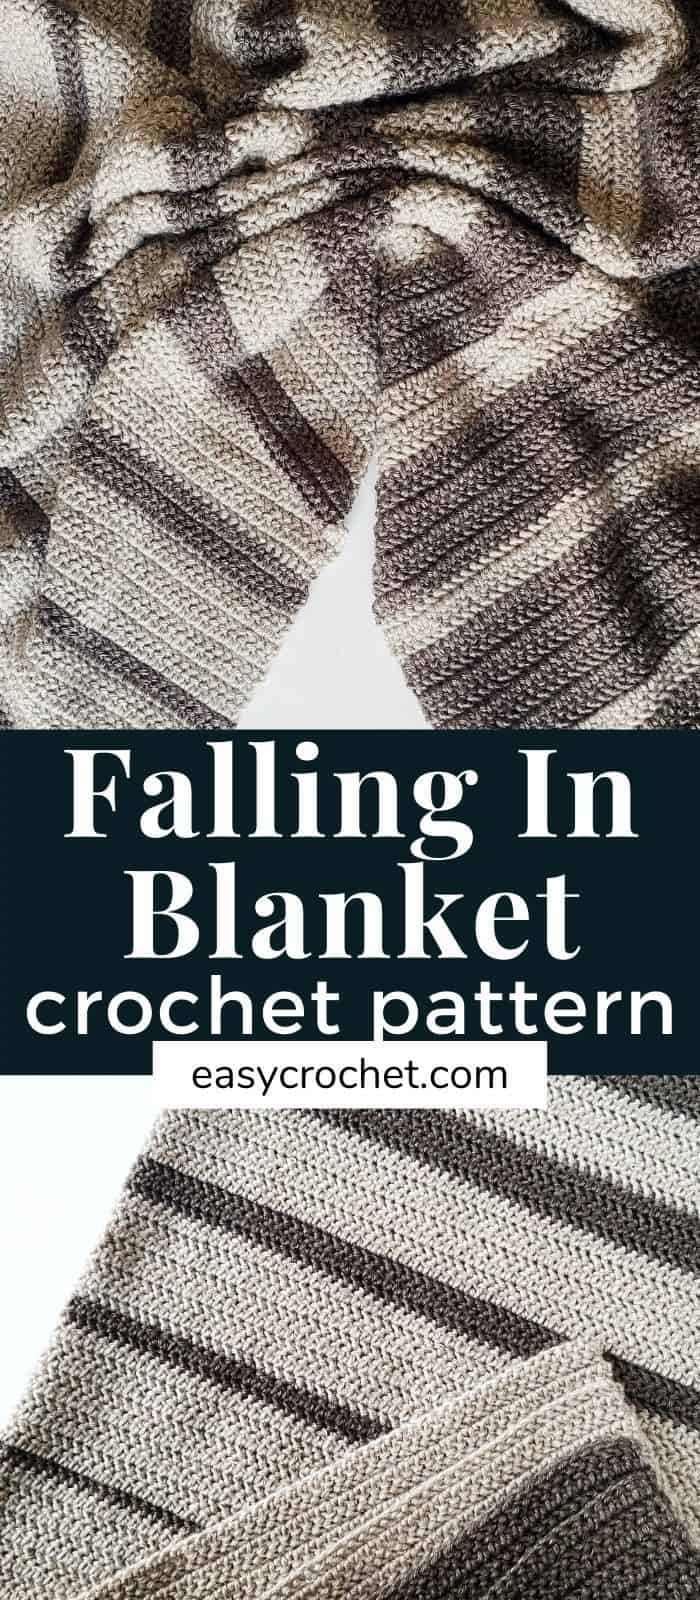 Falling in Striped Blanket Pattern Crochet via @easycrochetcom